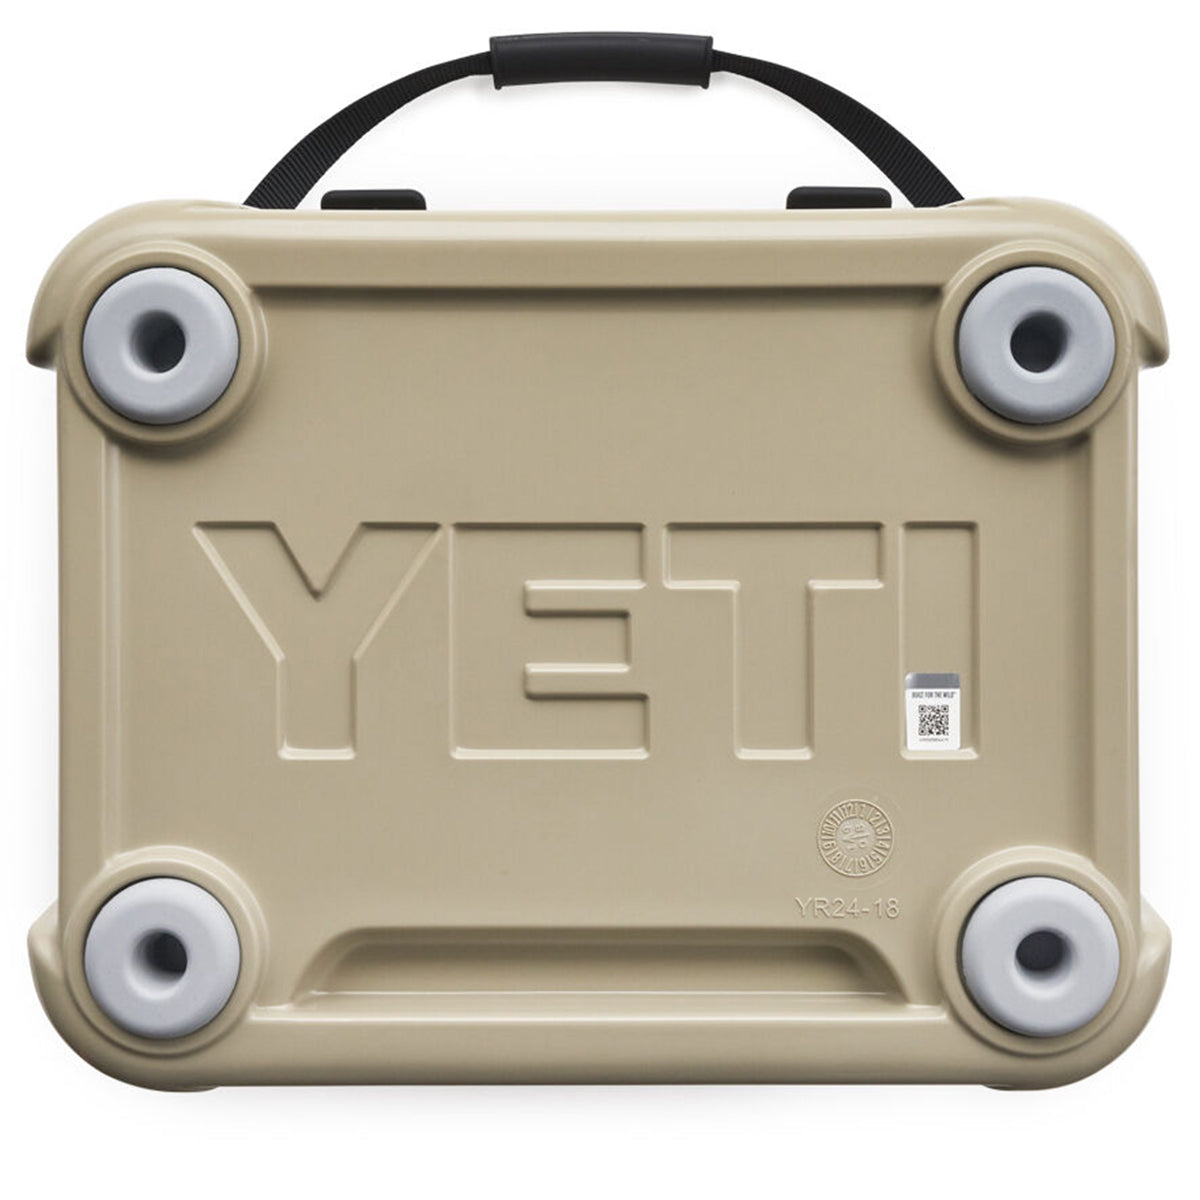 YETI Roadie 24 Cooler in YETI Roadie 24 Cooler by YETI | Camping - goHUNT Shop by GOHUNT | YETI - GOHUNT Shop